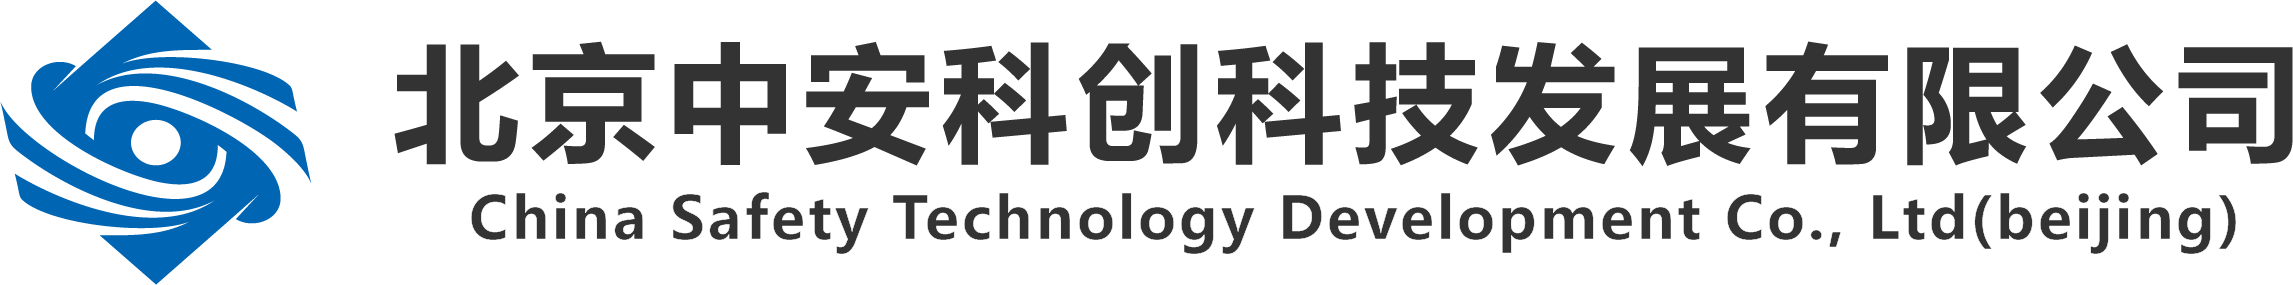 北京中安科创科技发展有限公司